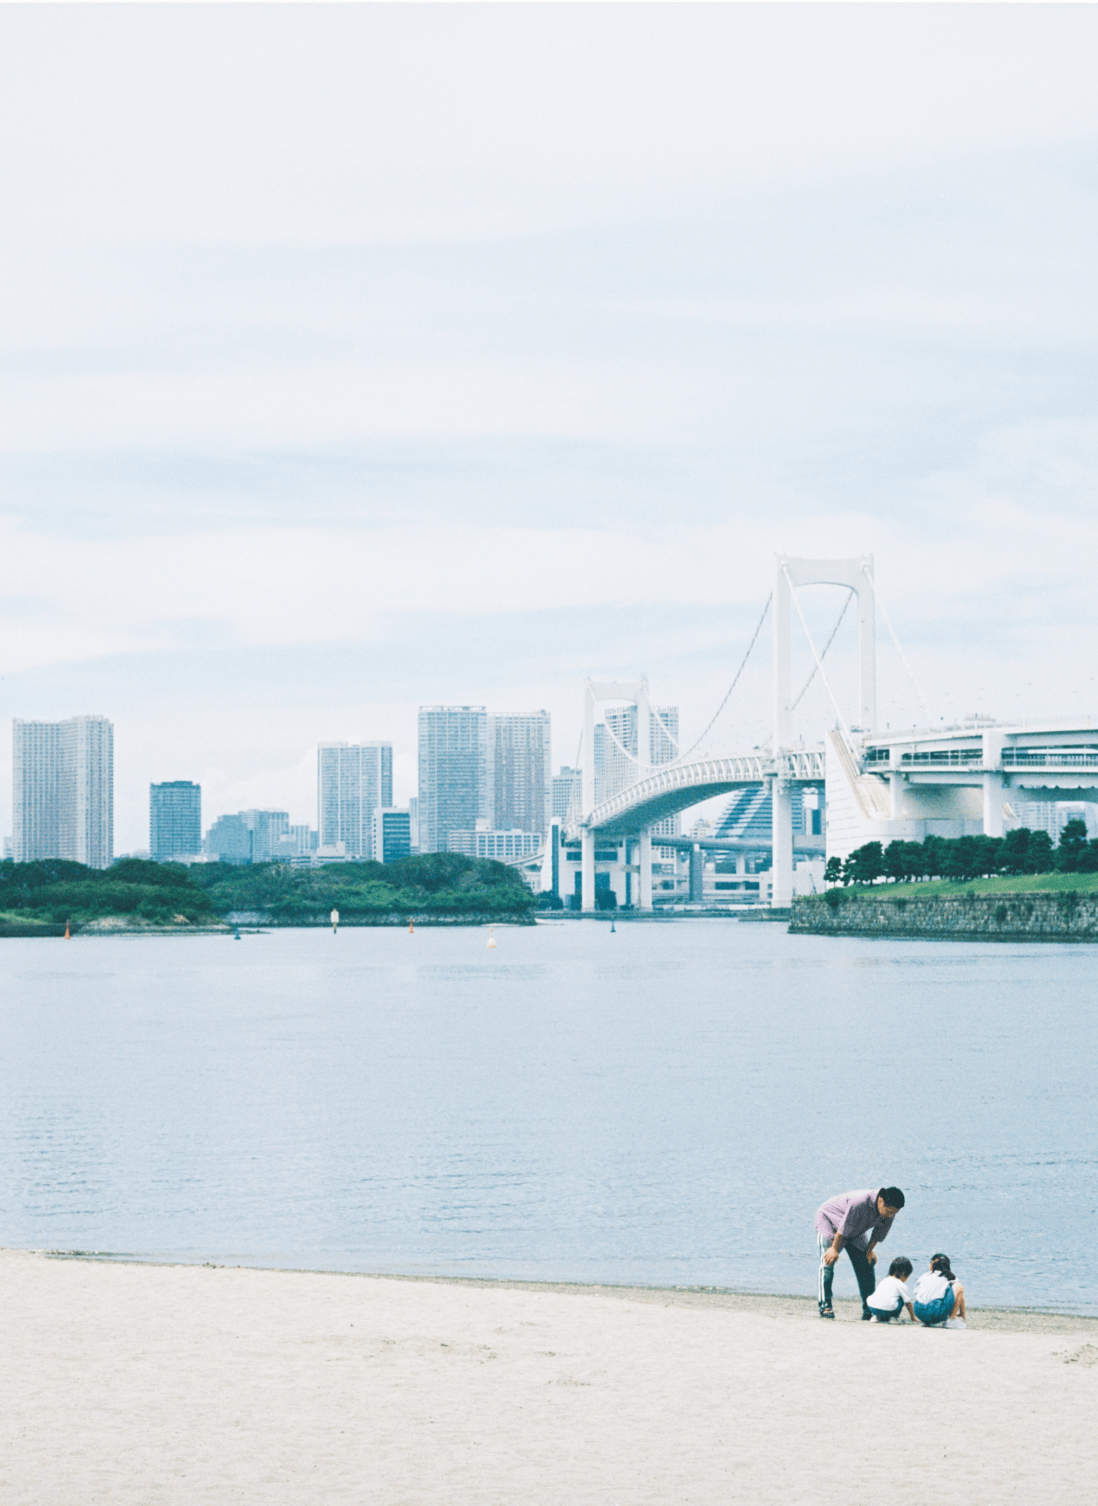 大人1人と子供2人が砂浜で遊んでいる背景には大きな橋と複数ビルが写っている様子。